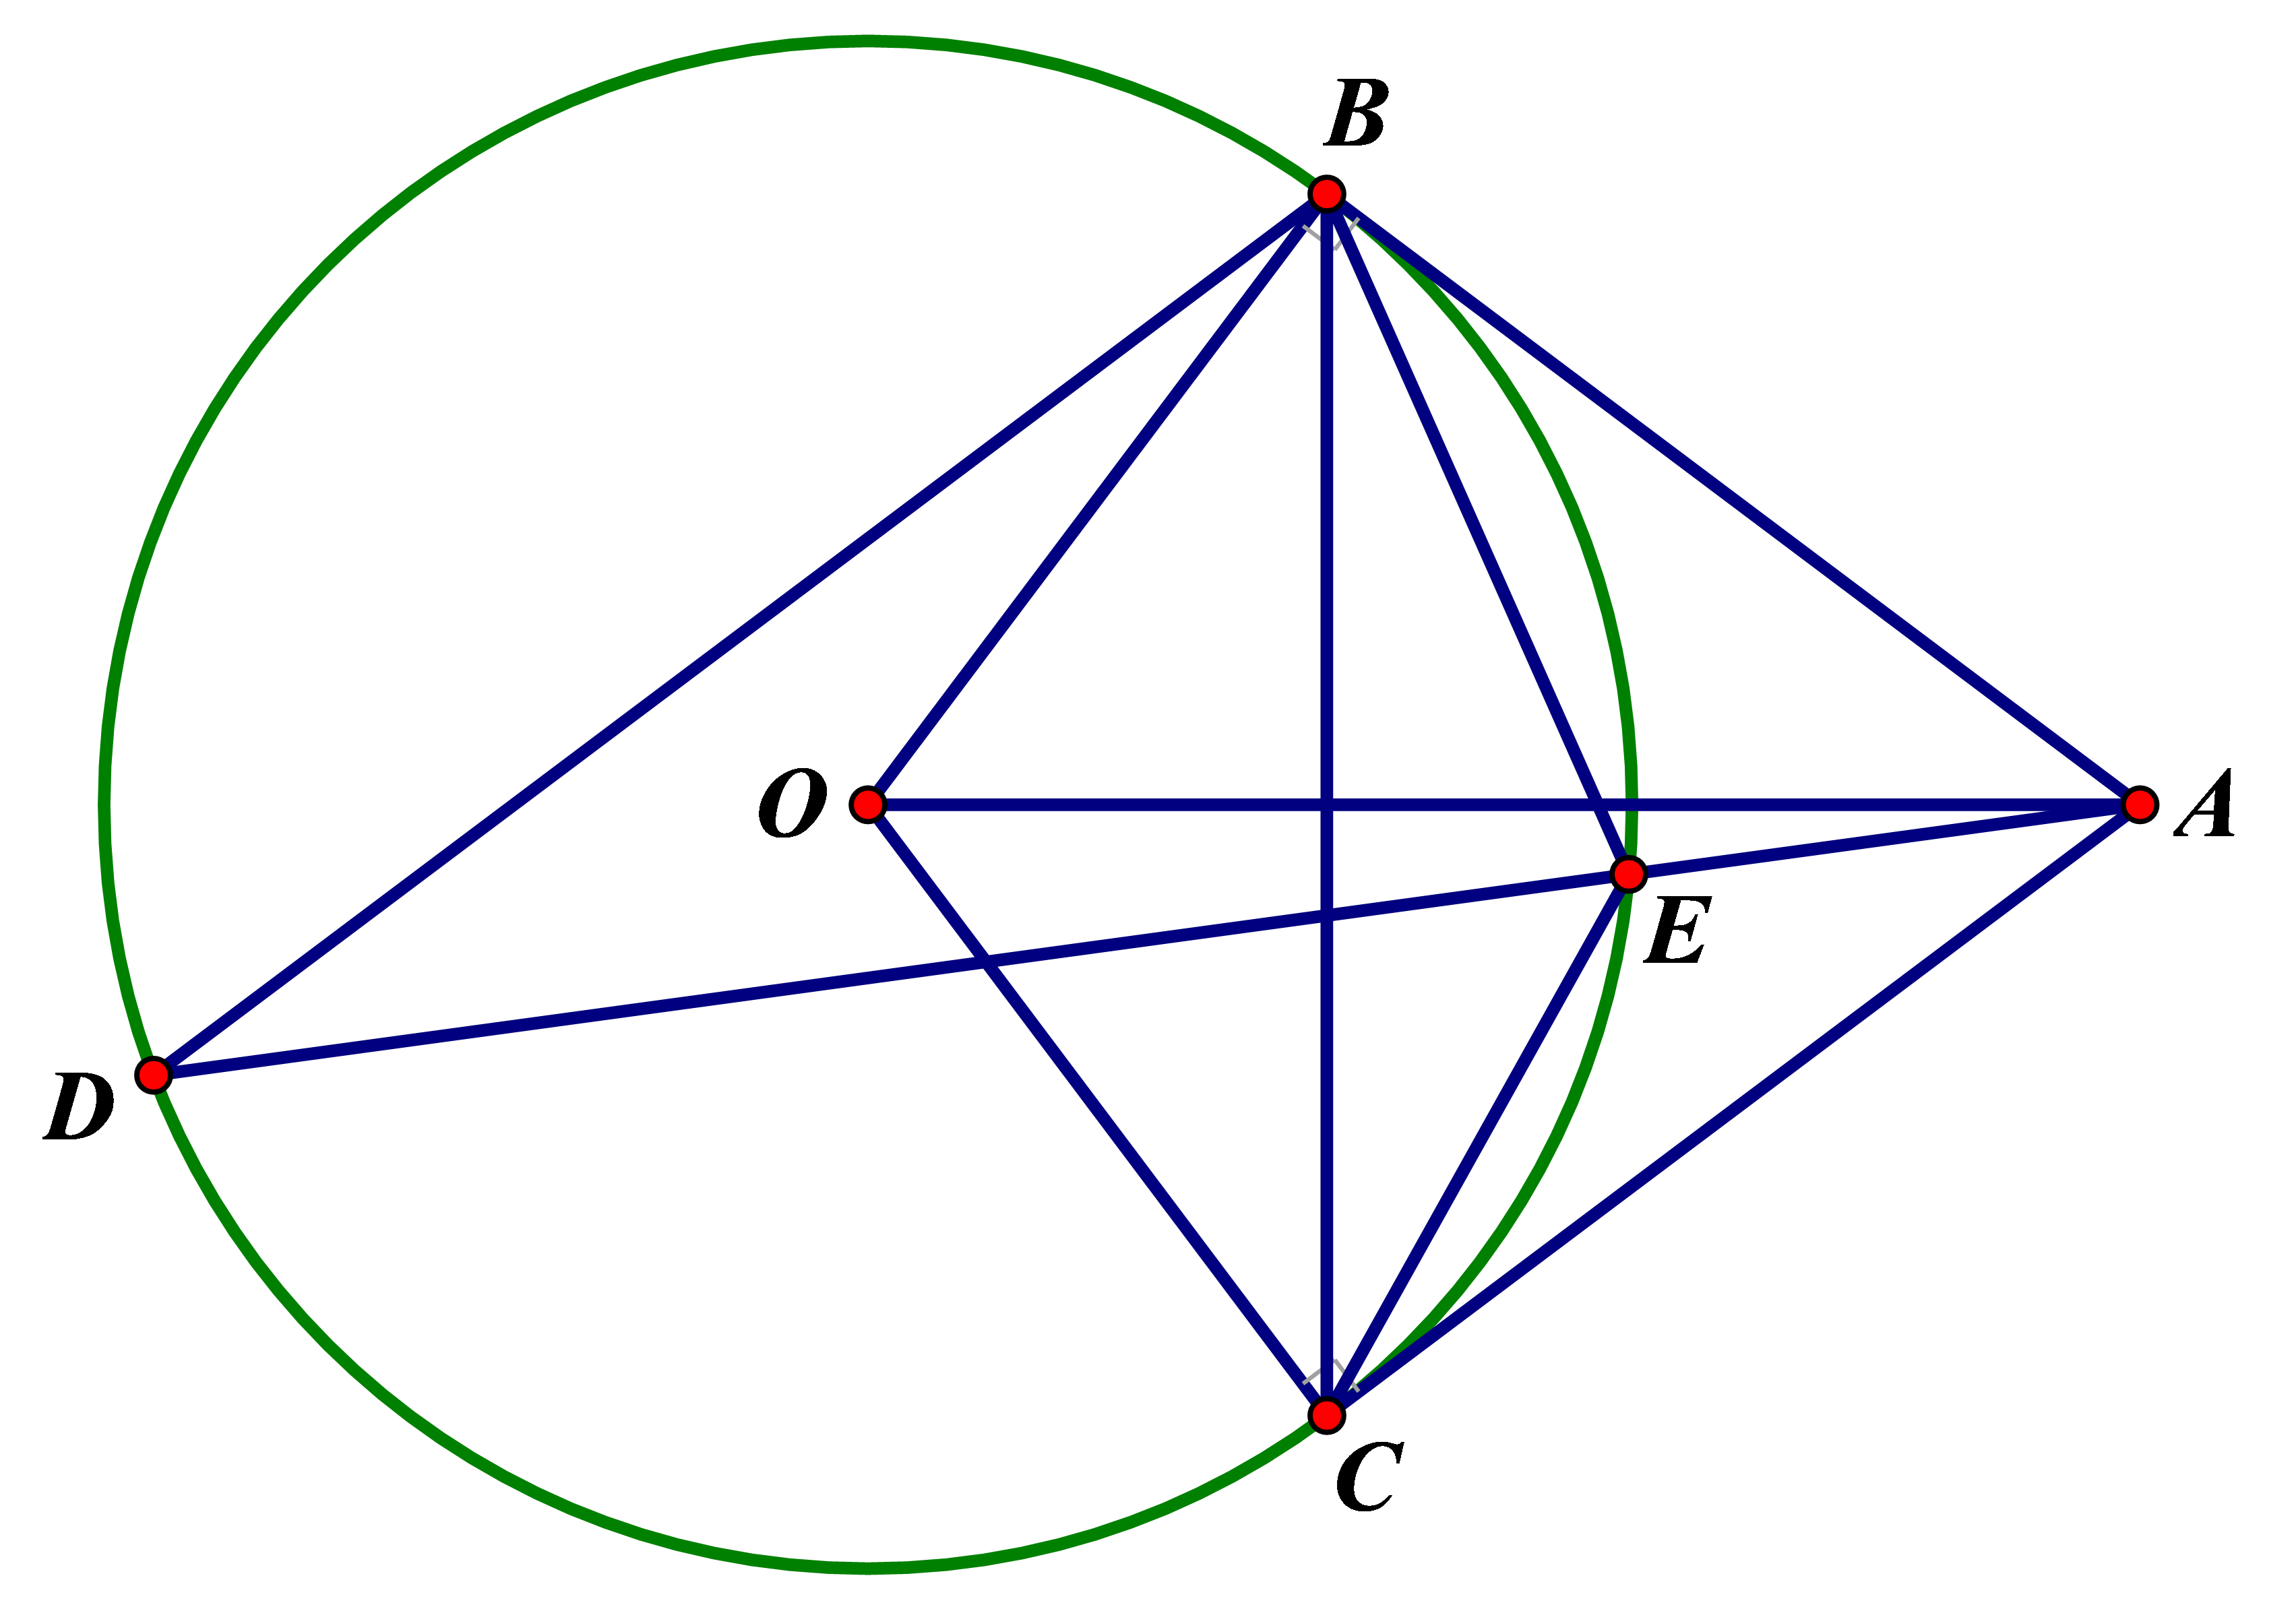 Cho đường tròn (O; R). Từ điểm A nằm ngoài đường tròn kẻ hai tiếp tuyến AB, AC với đường tròn (B, C là hai tiếp điểm). Từ B kẻ đường thẳng song song với AC cắt (O) tại D (D khác B), đường thẳng AD cắt (O) tại E (E khác D). a) Chứng minh tứ giác ABOC nội tiếp. b) Chứng minh AE.AD = AB2. c) Giả sử OA = 2R. Tính số đo góc BEC và diện tích tứ giác ABOC.  (ảnh 1)